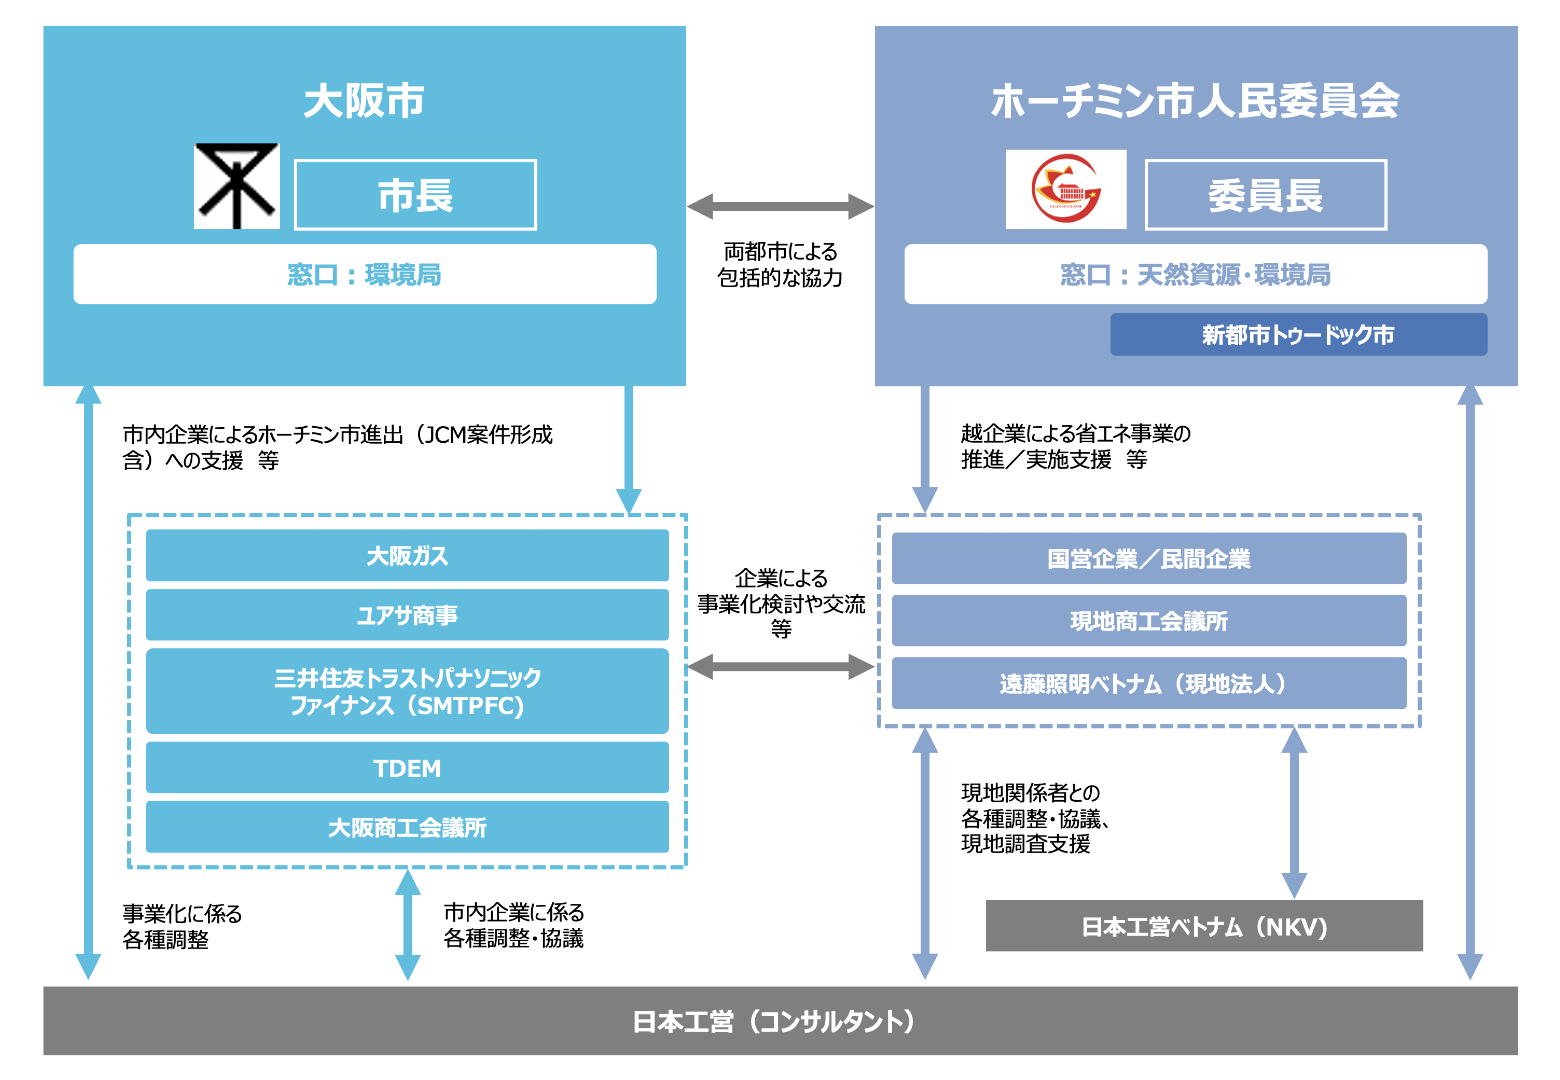 大阪市とホーチミン市との都市間連携事業の実施体制（2022年度）を示した概要図